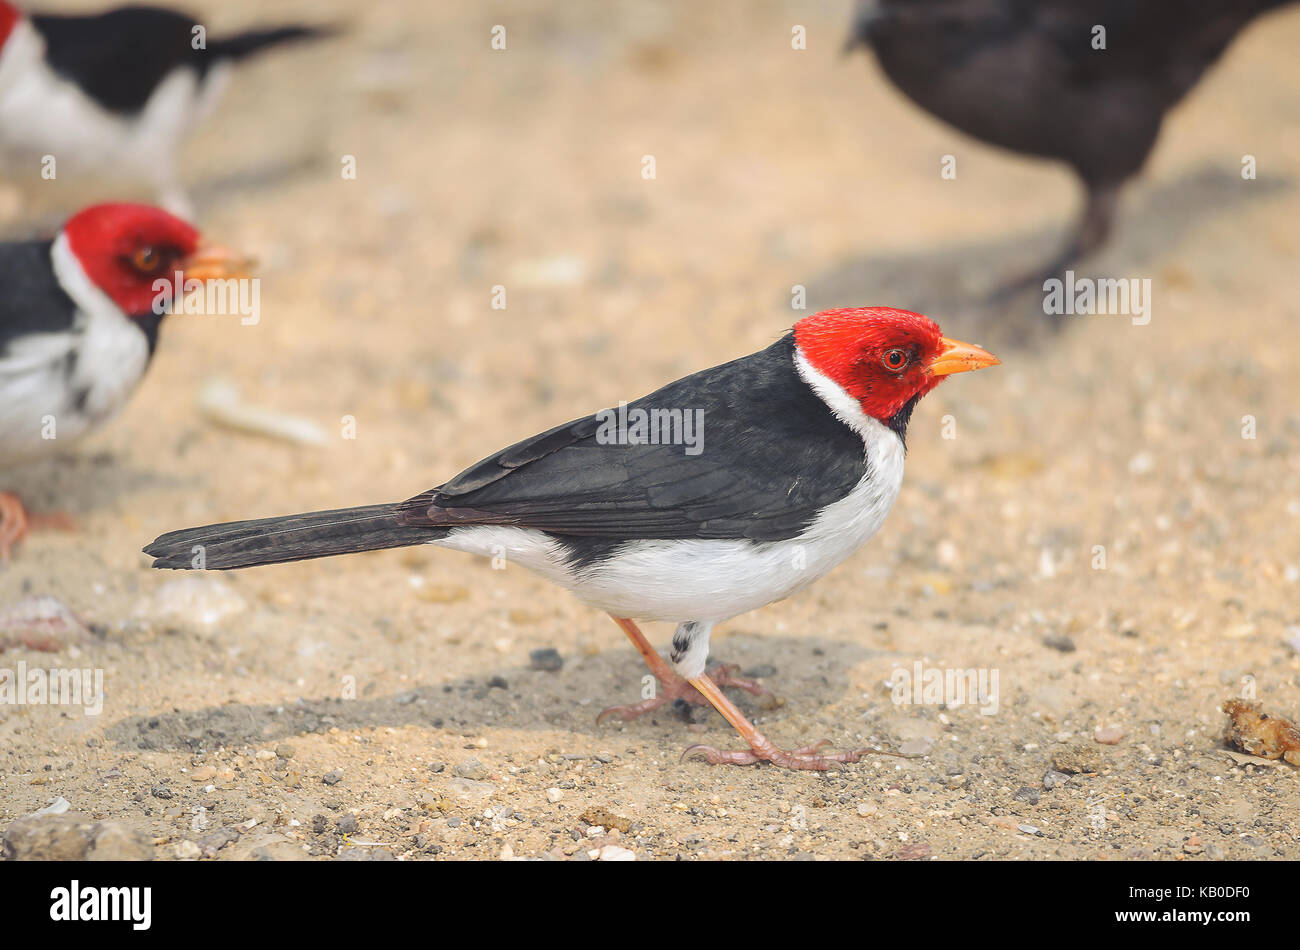 Cavalaria bird noto anche come Cardeal do Pantanal. Uccello con testa di colore rosso, nero ali e ventre bianco. Foto scattata sul Pantanal, Brasile. Foto Stock